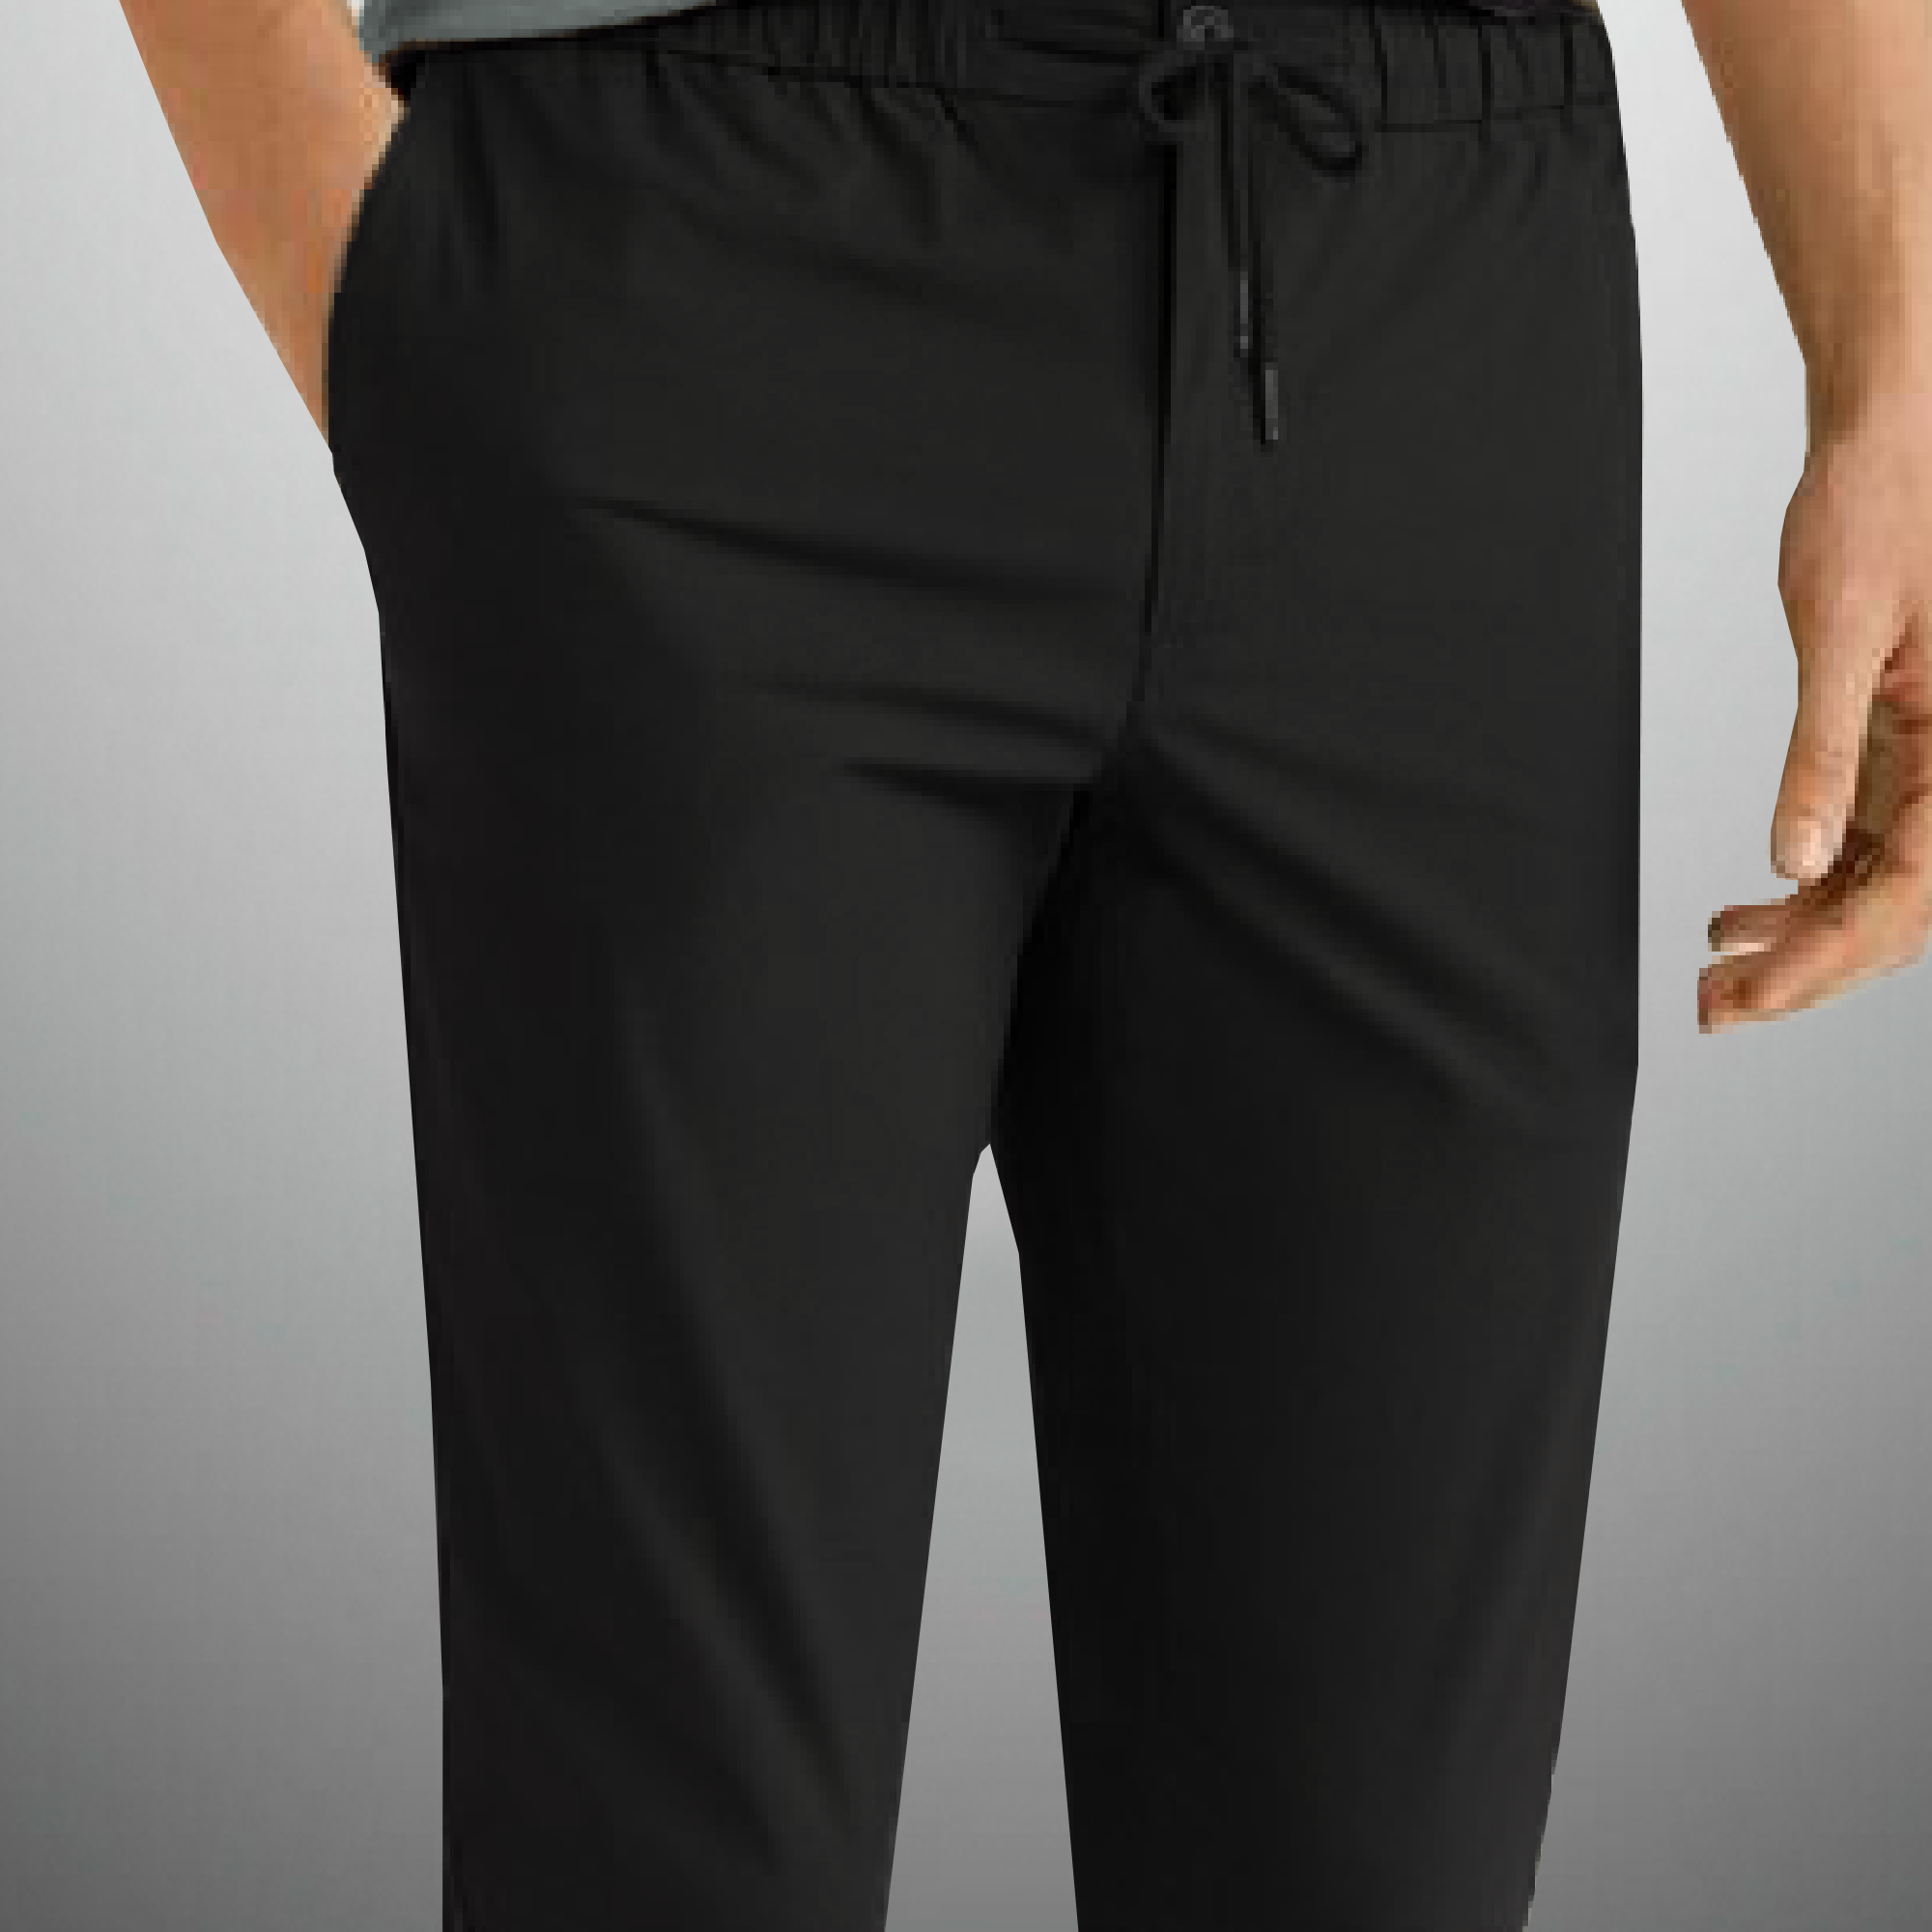 Men's Black Trouser style Casual pant-RMT011